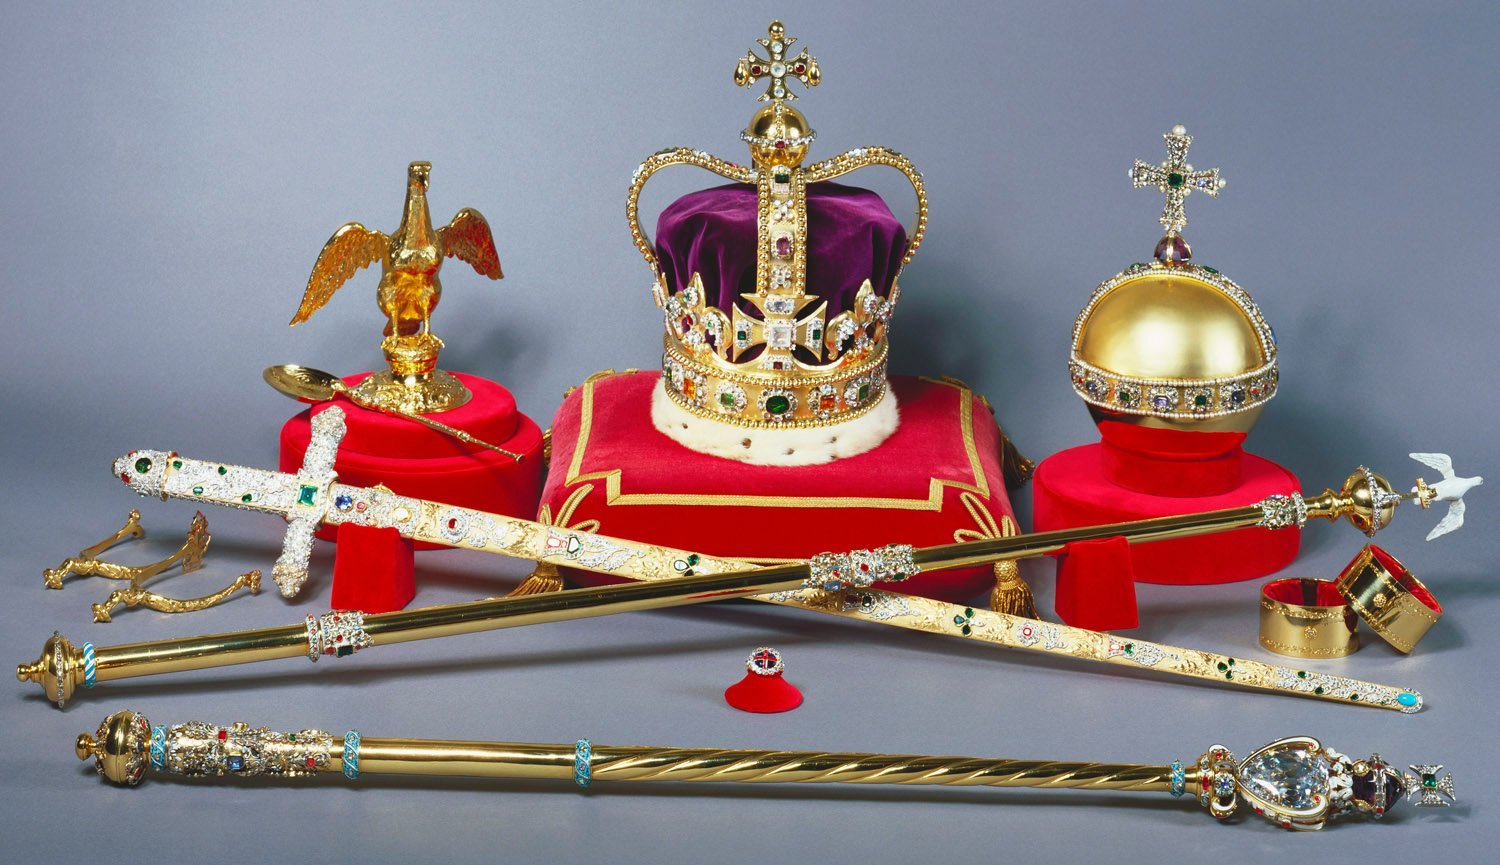 英女王伊丽莎白二世的加冕典礼上就一手拿着圣球,一手举着权杖,也是